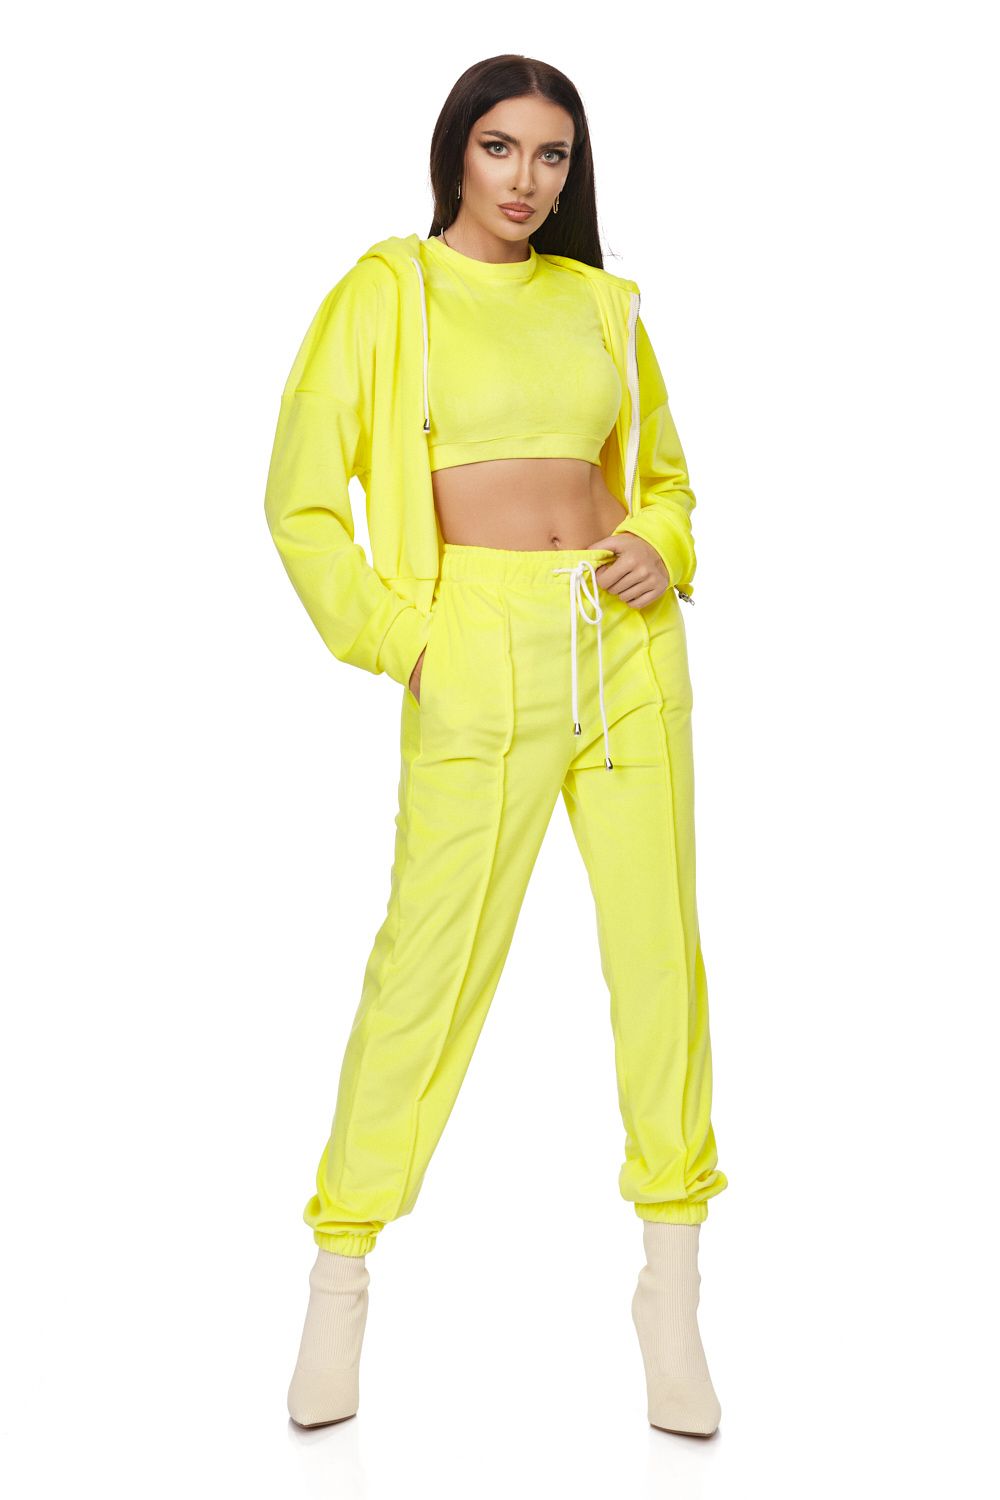 Дамски спортен костюм Melos Bogas в жълт цвят